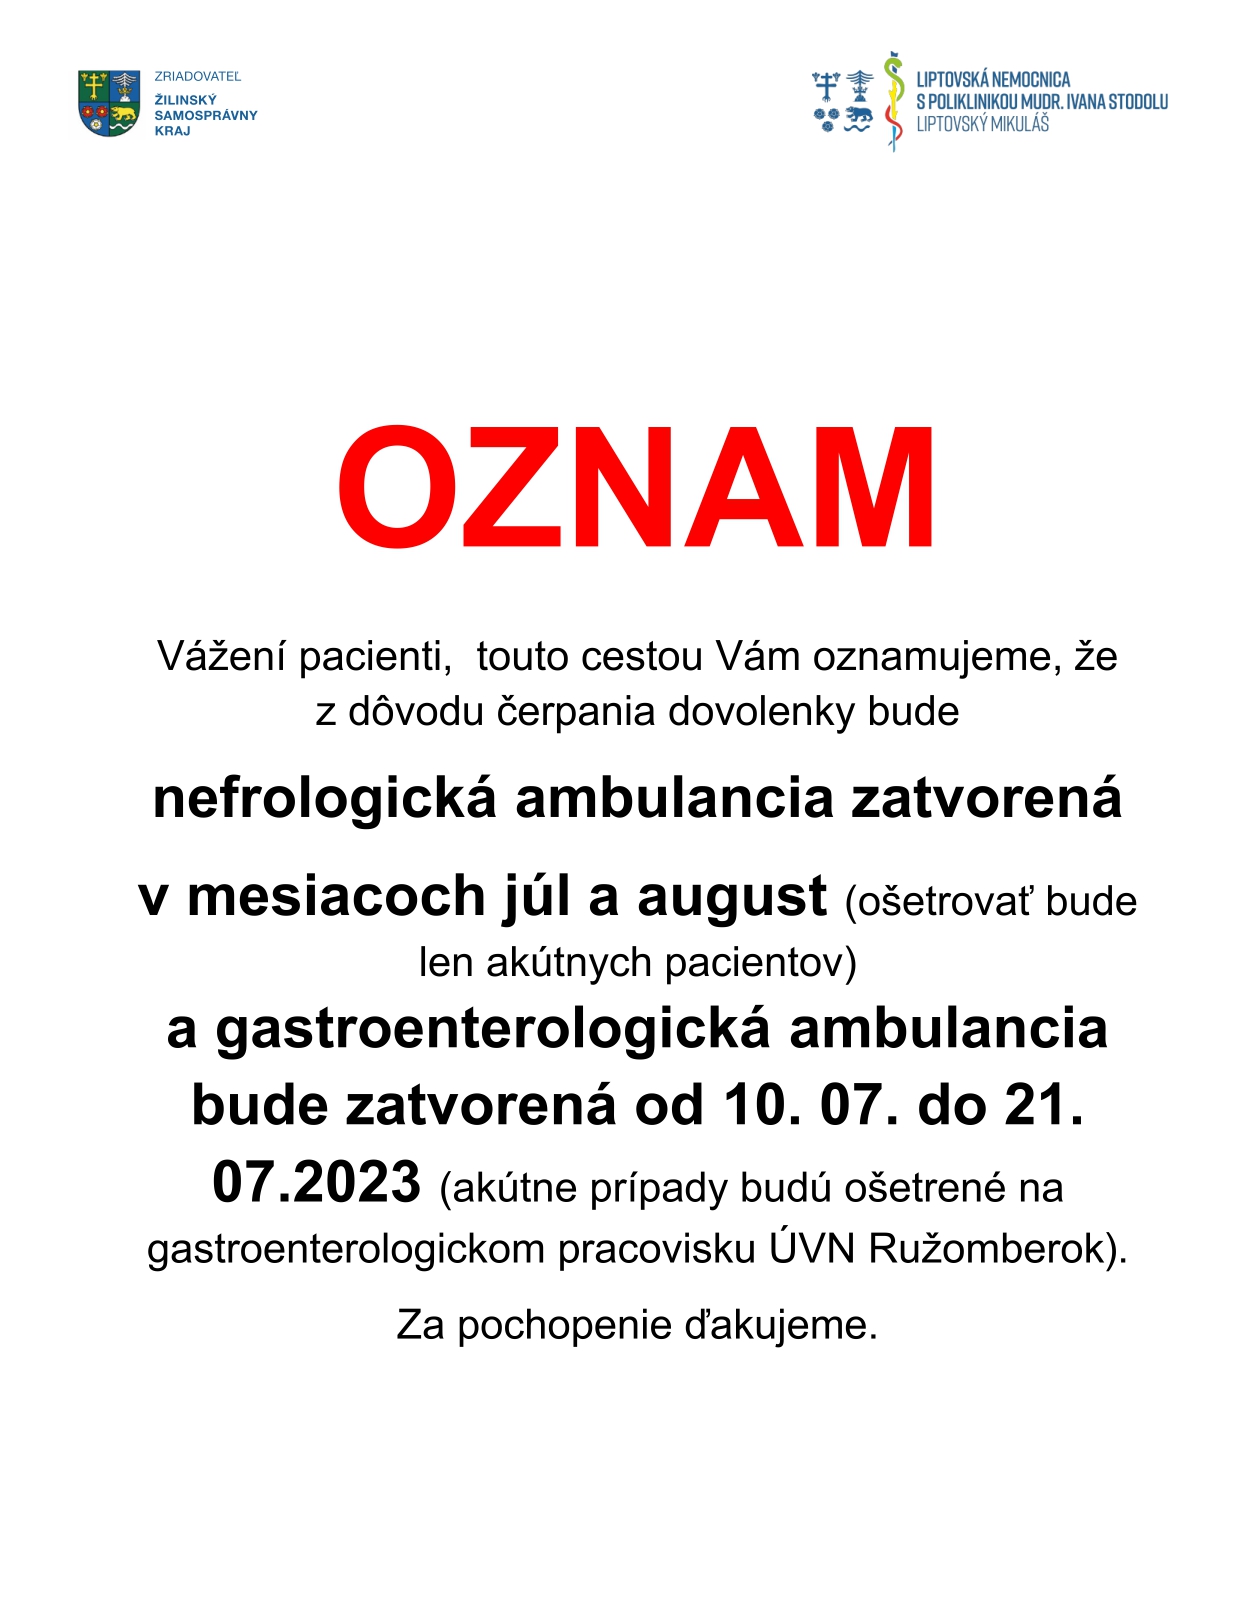 Oznam pre pacientov nefrologickej ambulancie a gastroenterologickej ambulancie